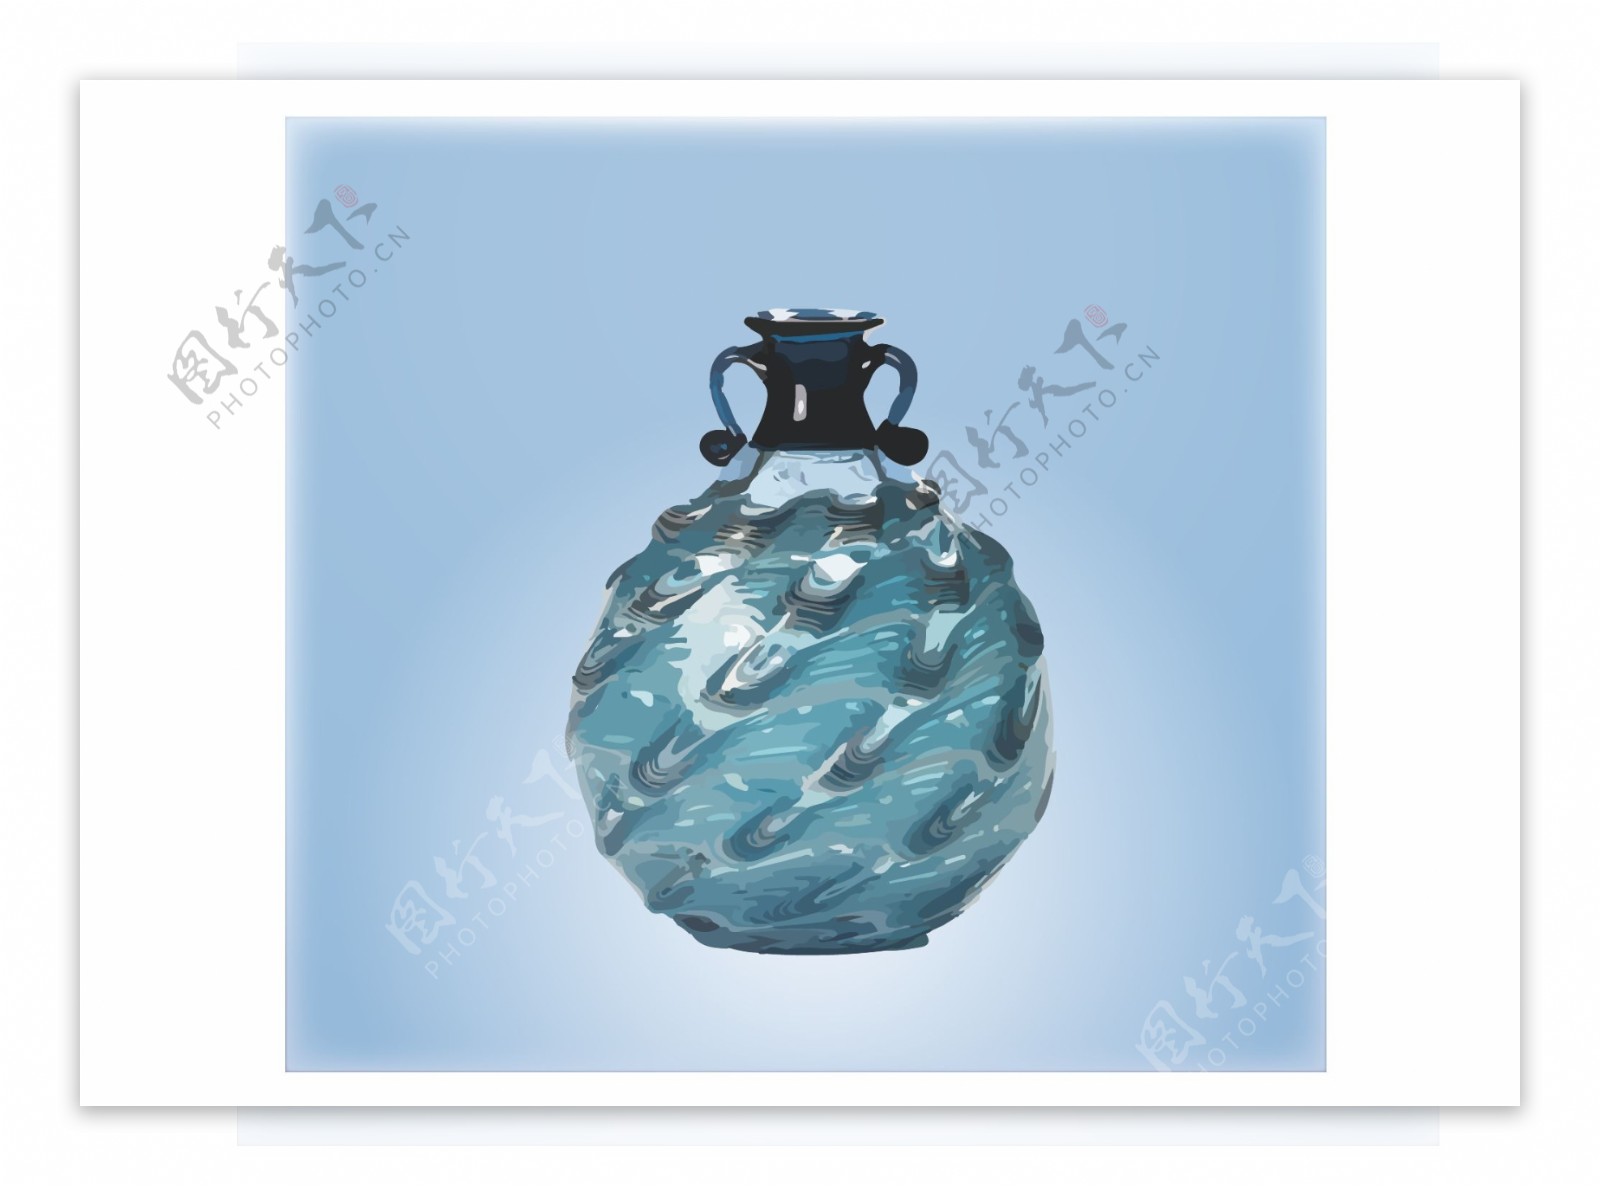 高贵的蓝色玻璃花瓶矢量图